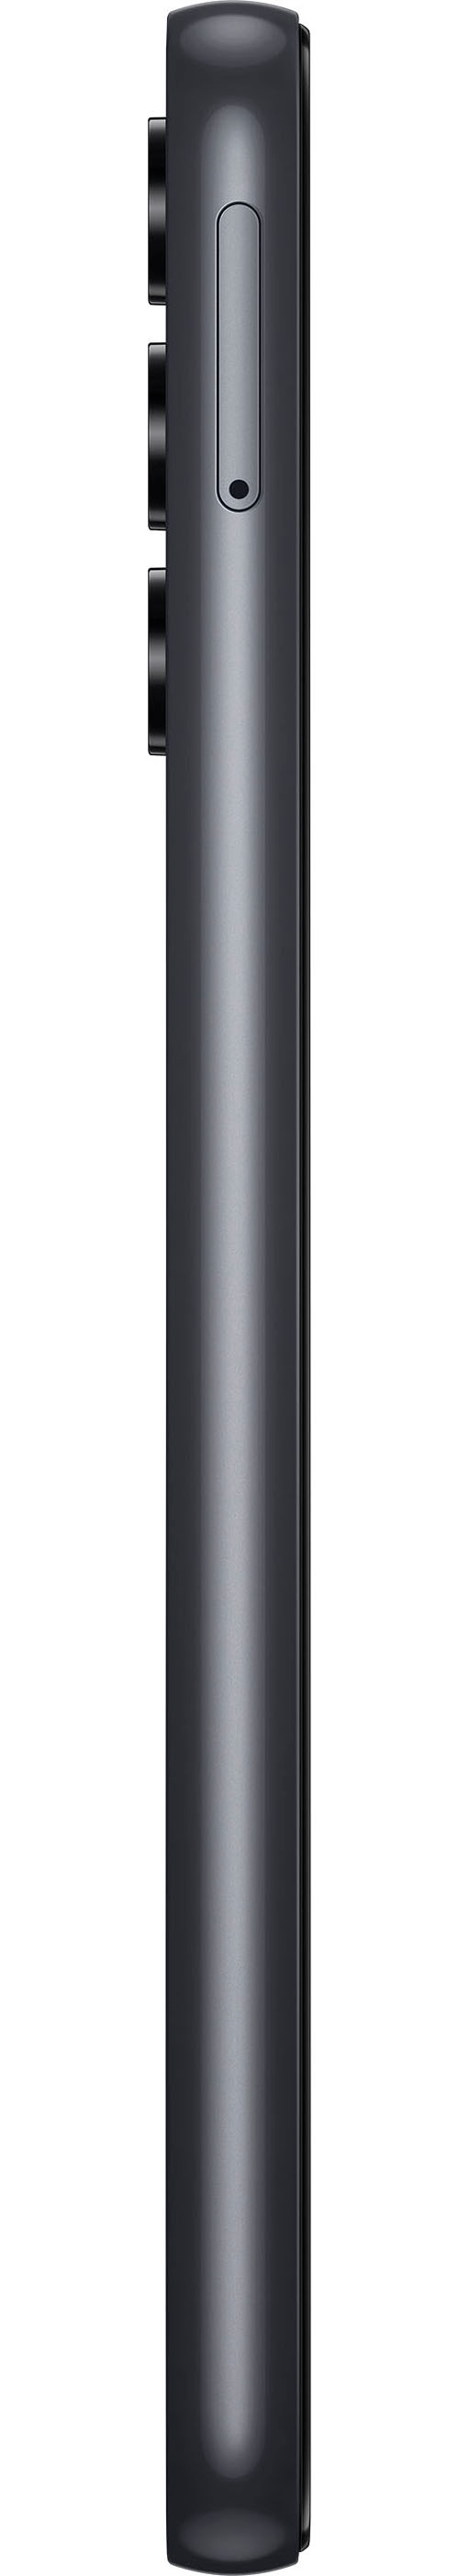 SAMSUNG Galaxy A14, 64GB, Black